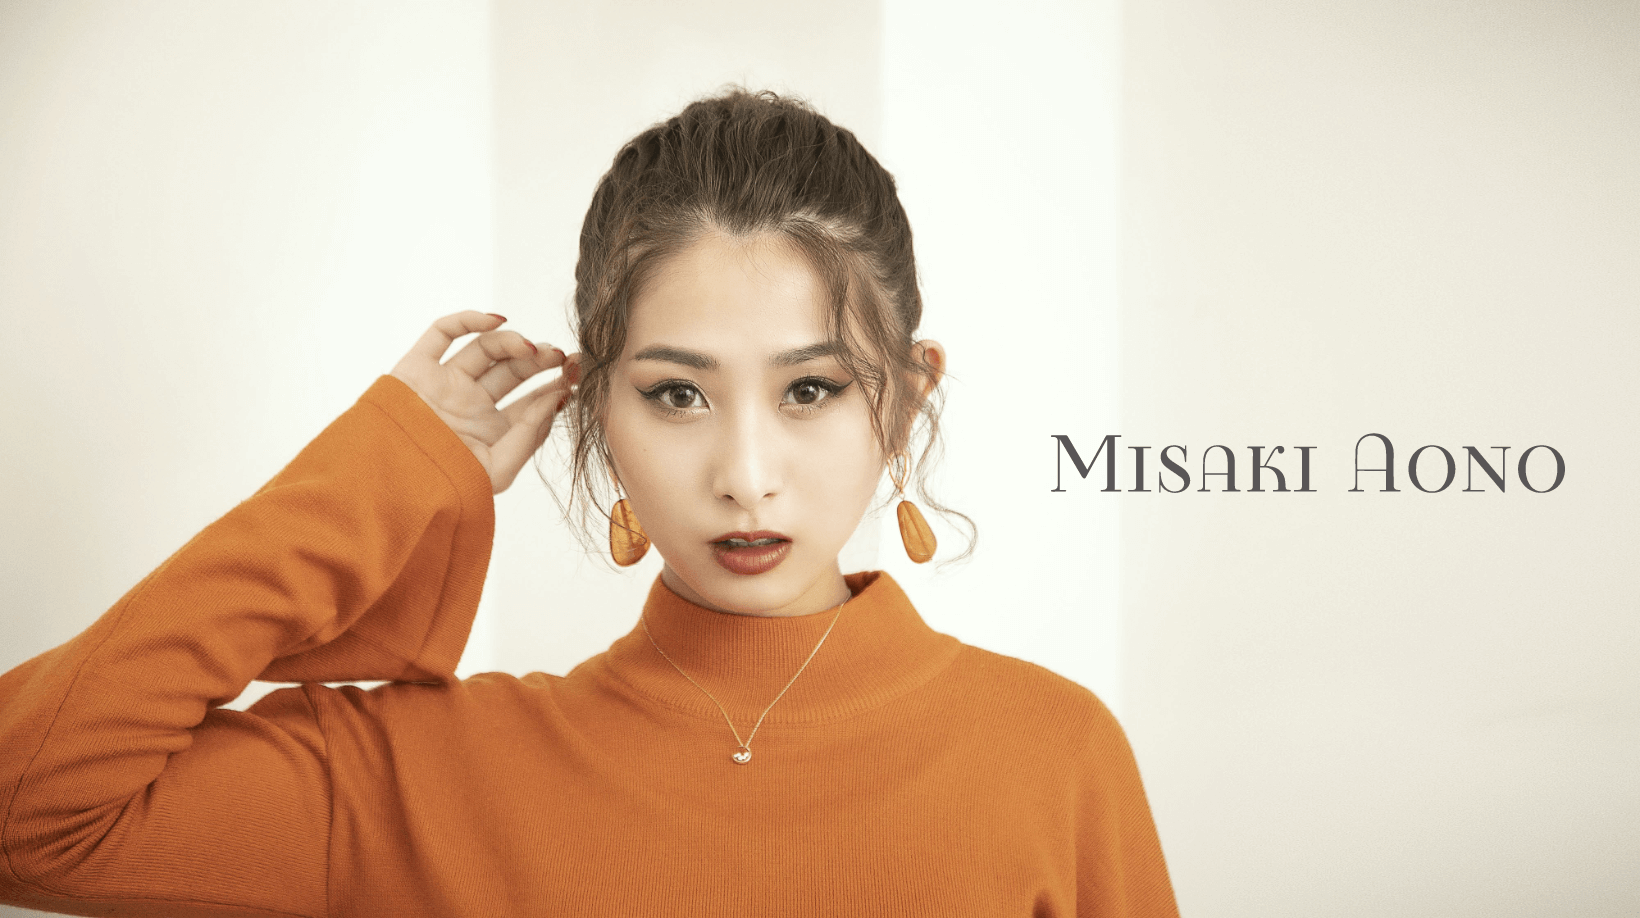 Misaki Aono official web site